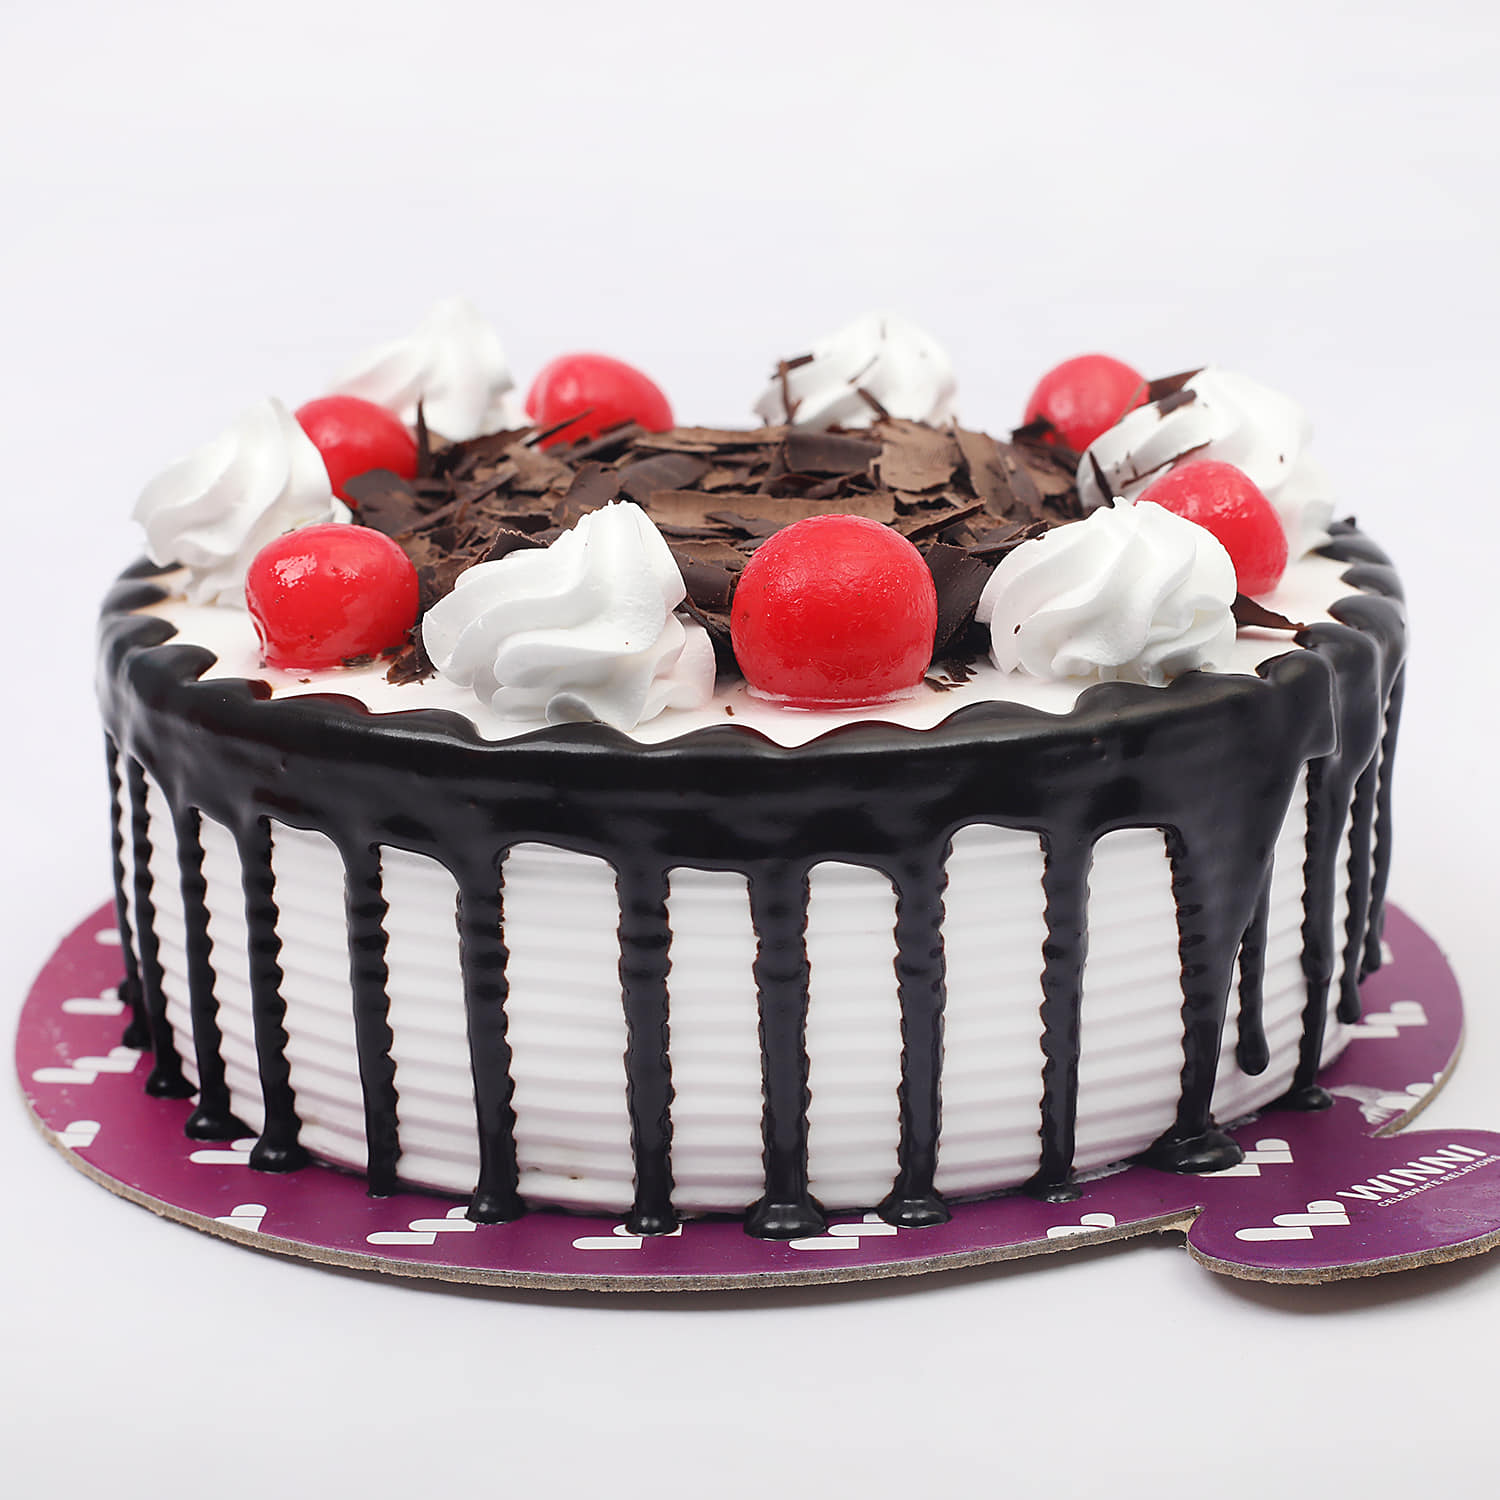 Buy/Send Seven Hearty Cake Half kg Online- Winni | Winni.in